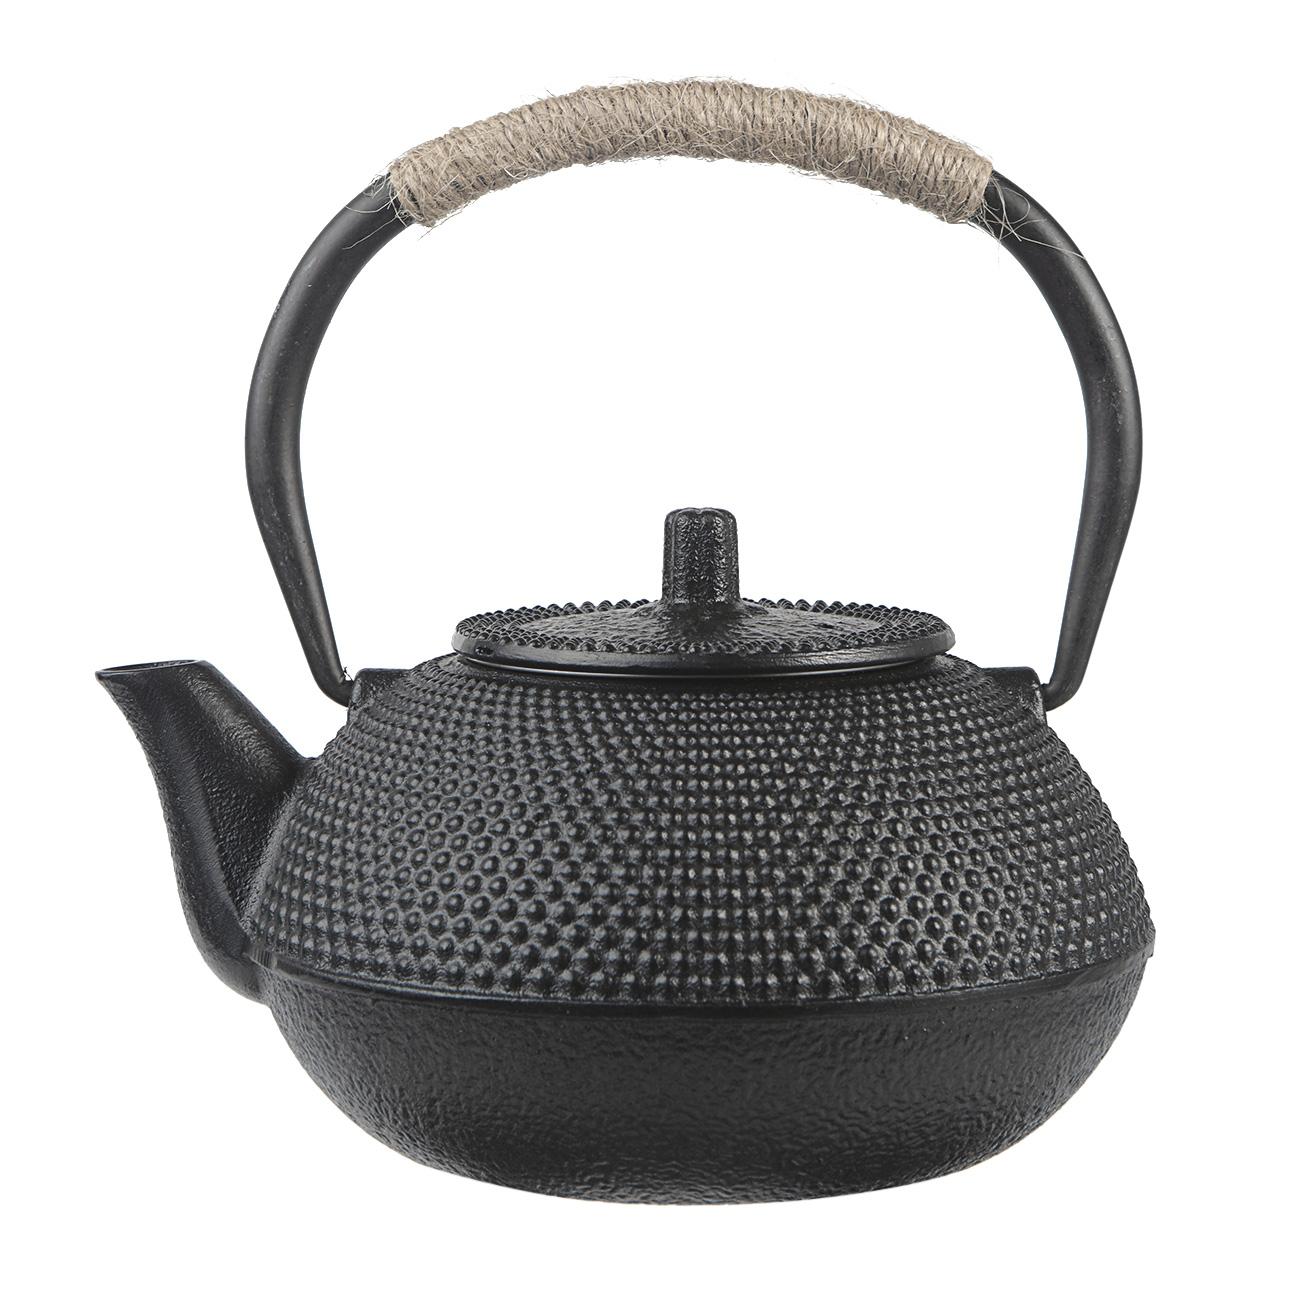 Tea Kettle Antique Cast Iron Teapot For Boiling Wa...